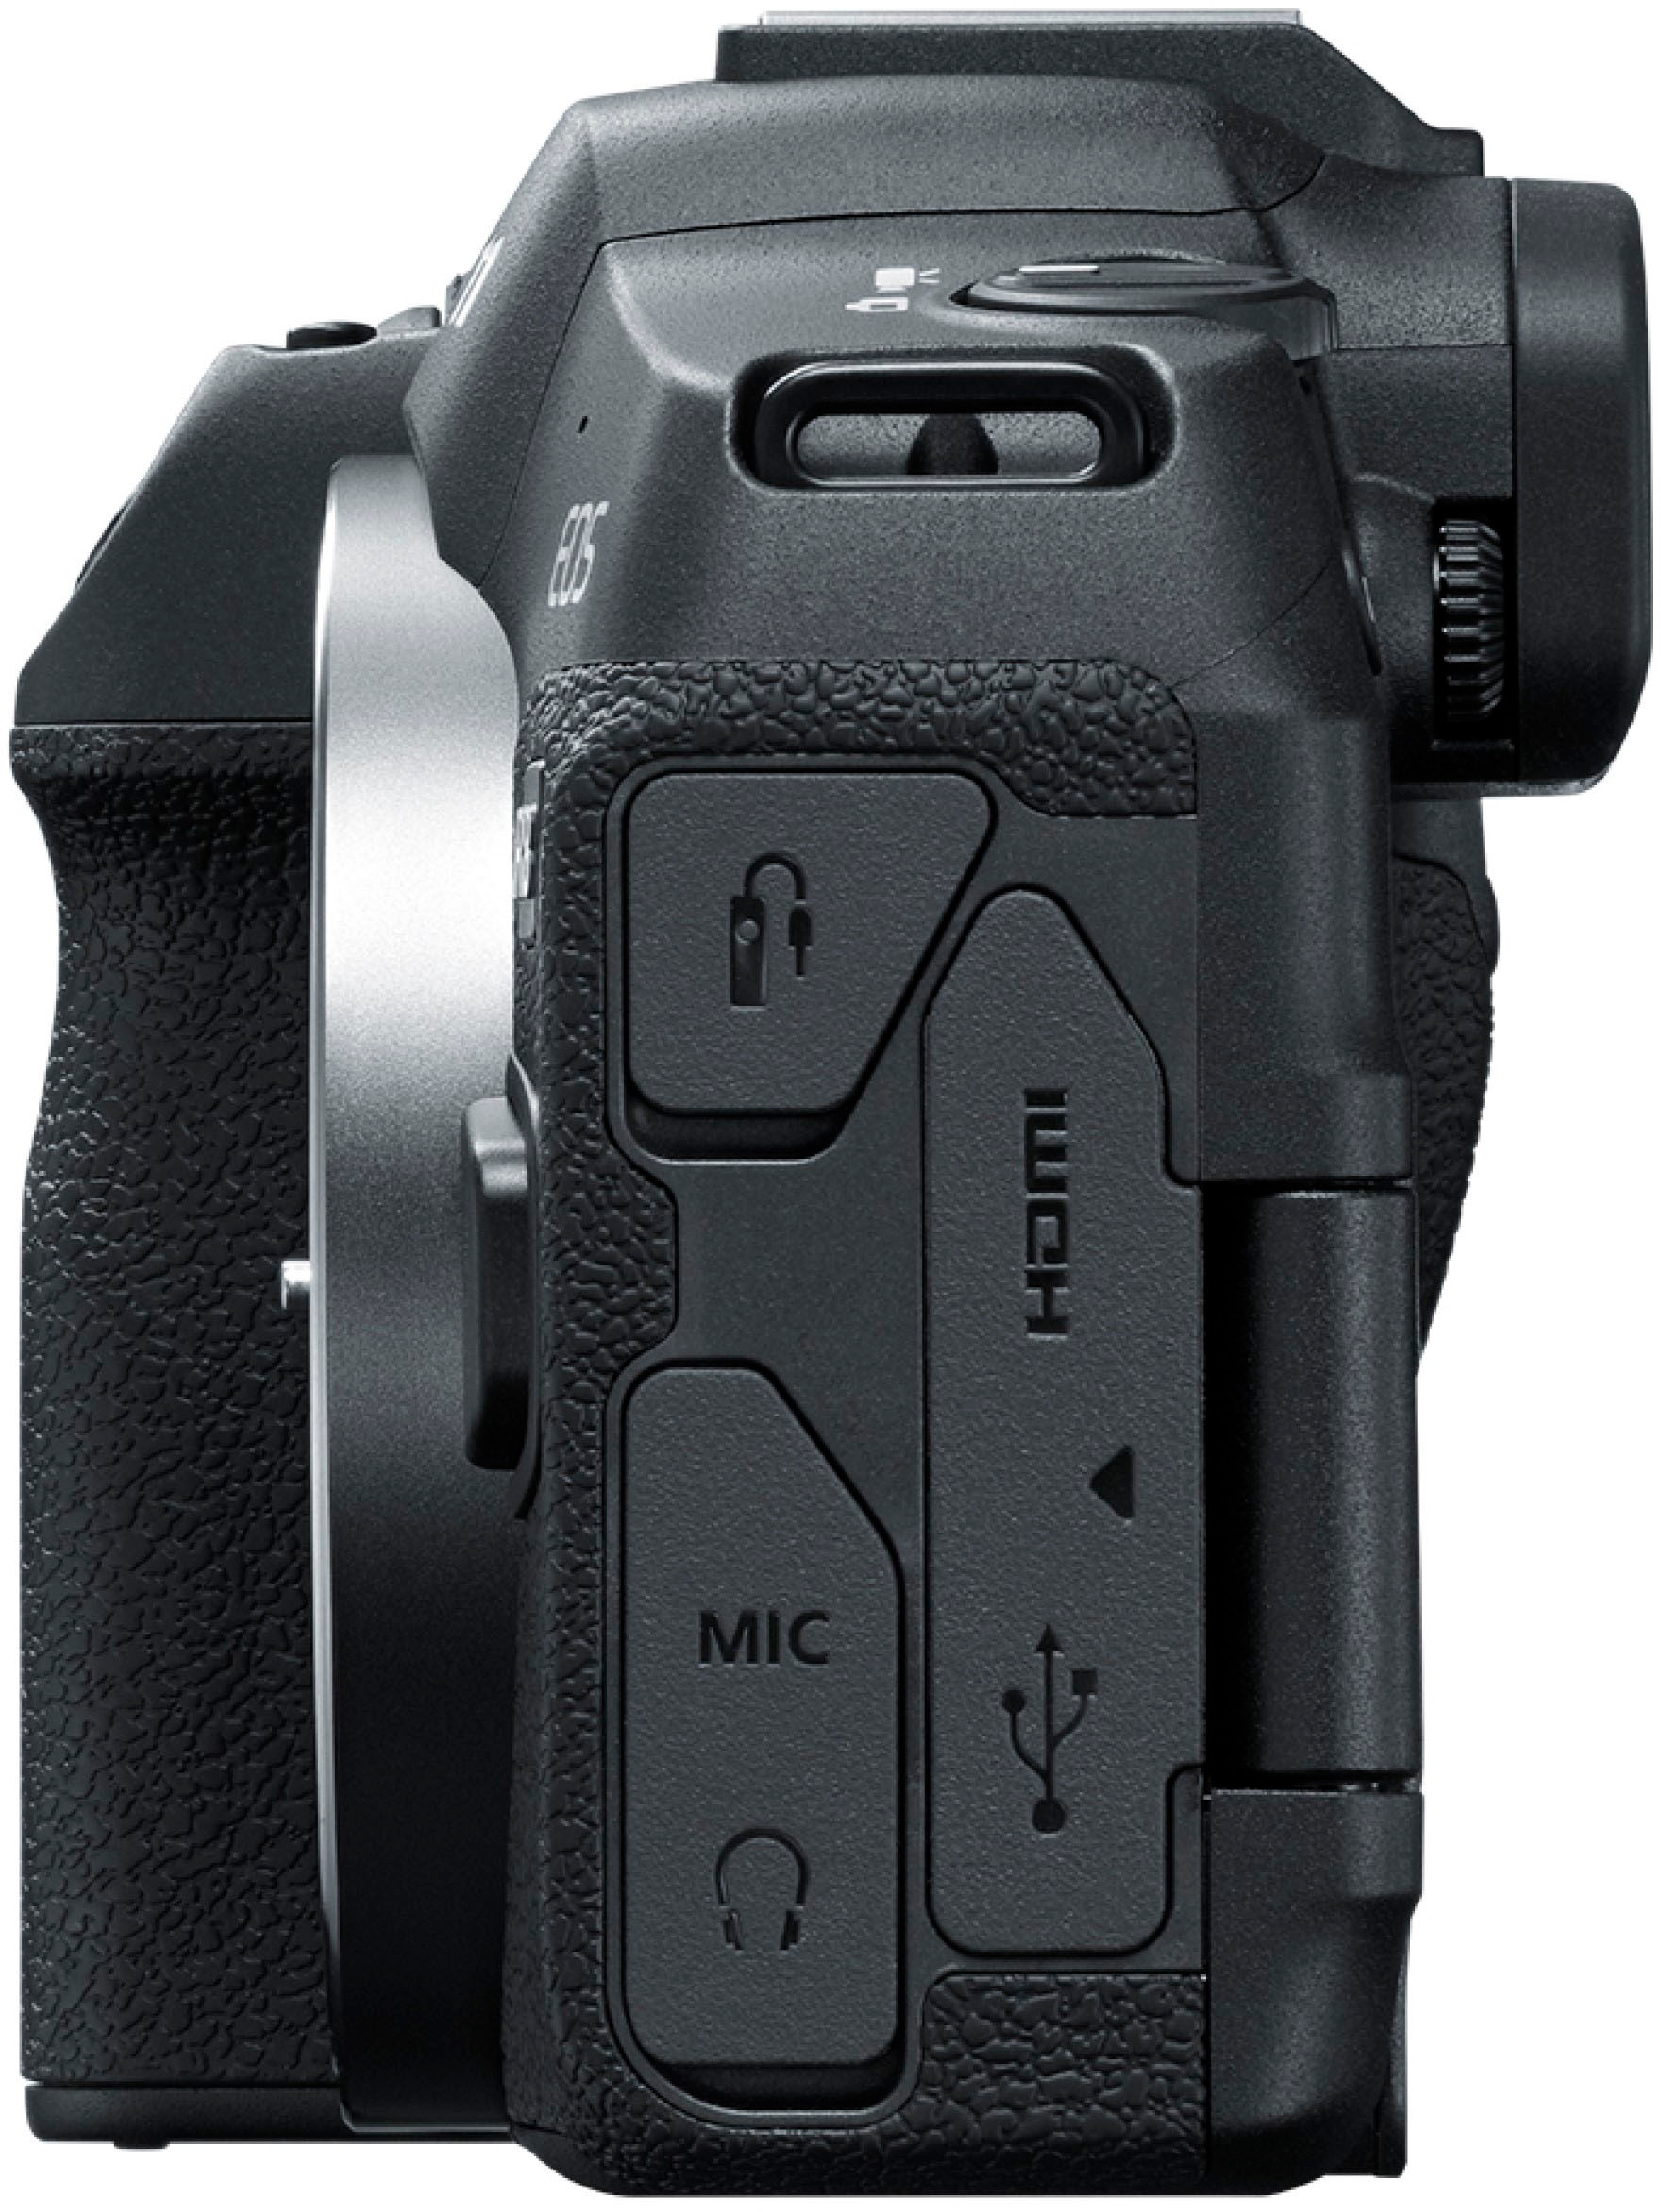 Canon EOS R8 Full Frame Mirrorless Camera + RF 24-50mm IS STM Lens Kit  Bundle 13803351361